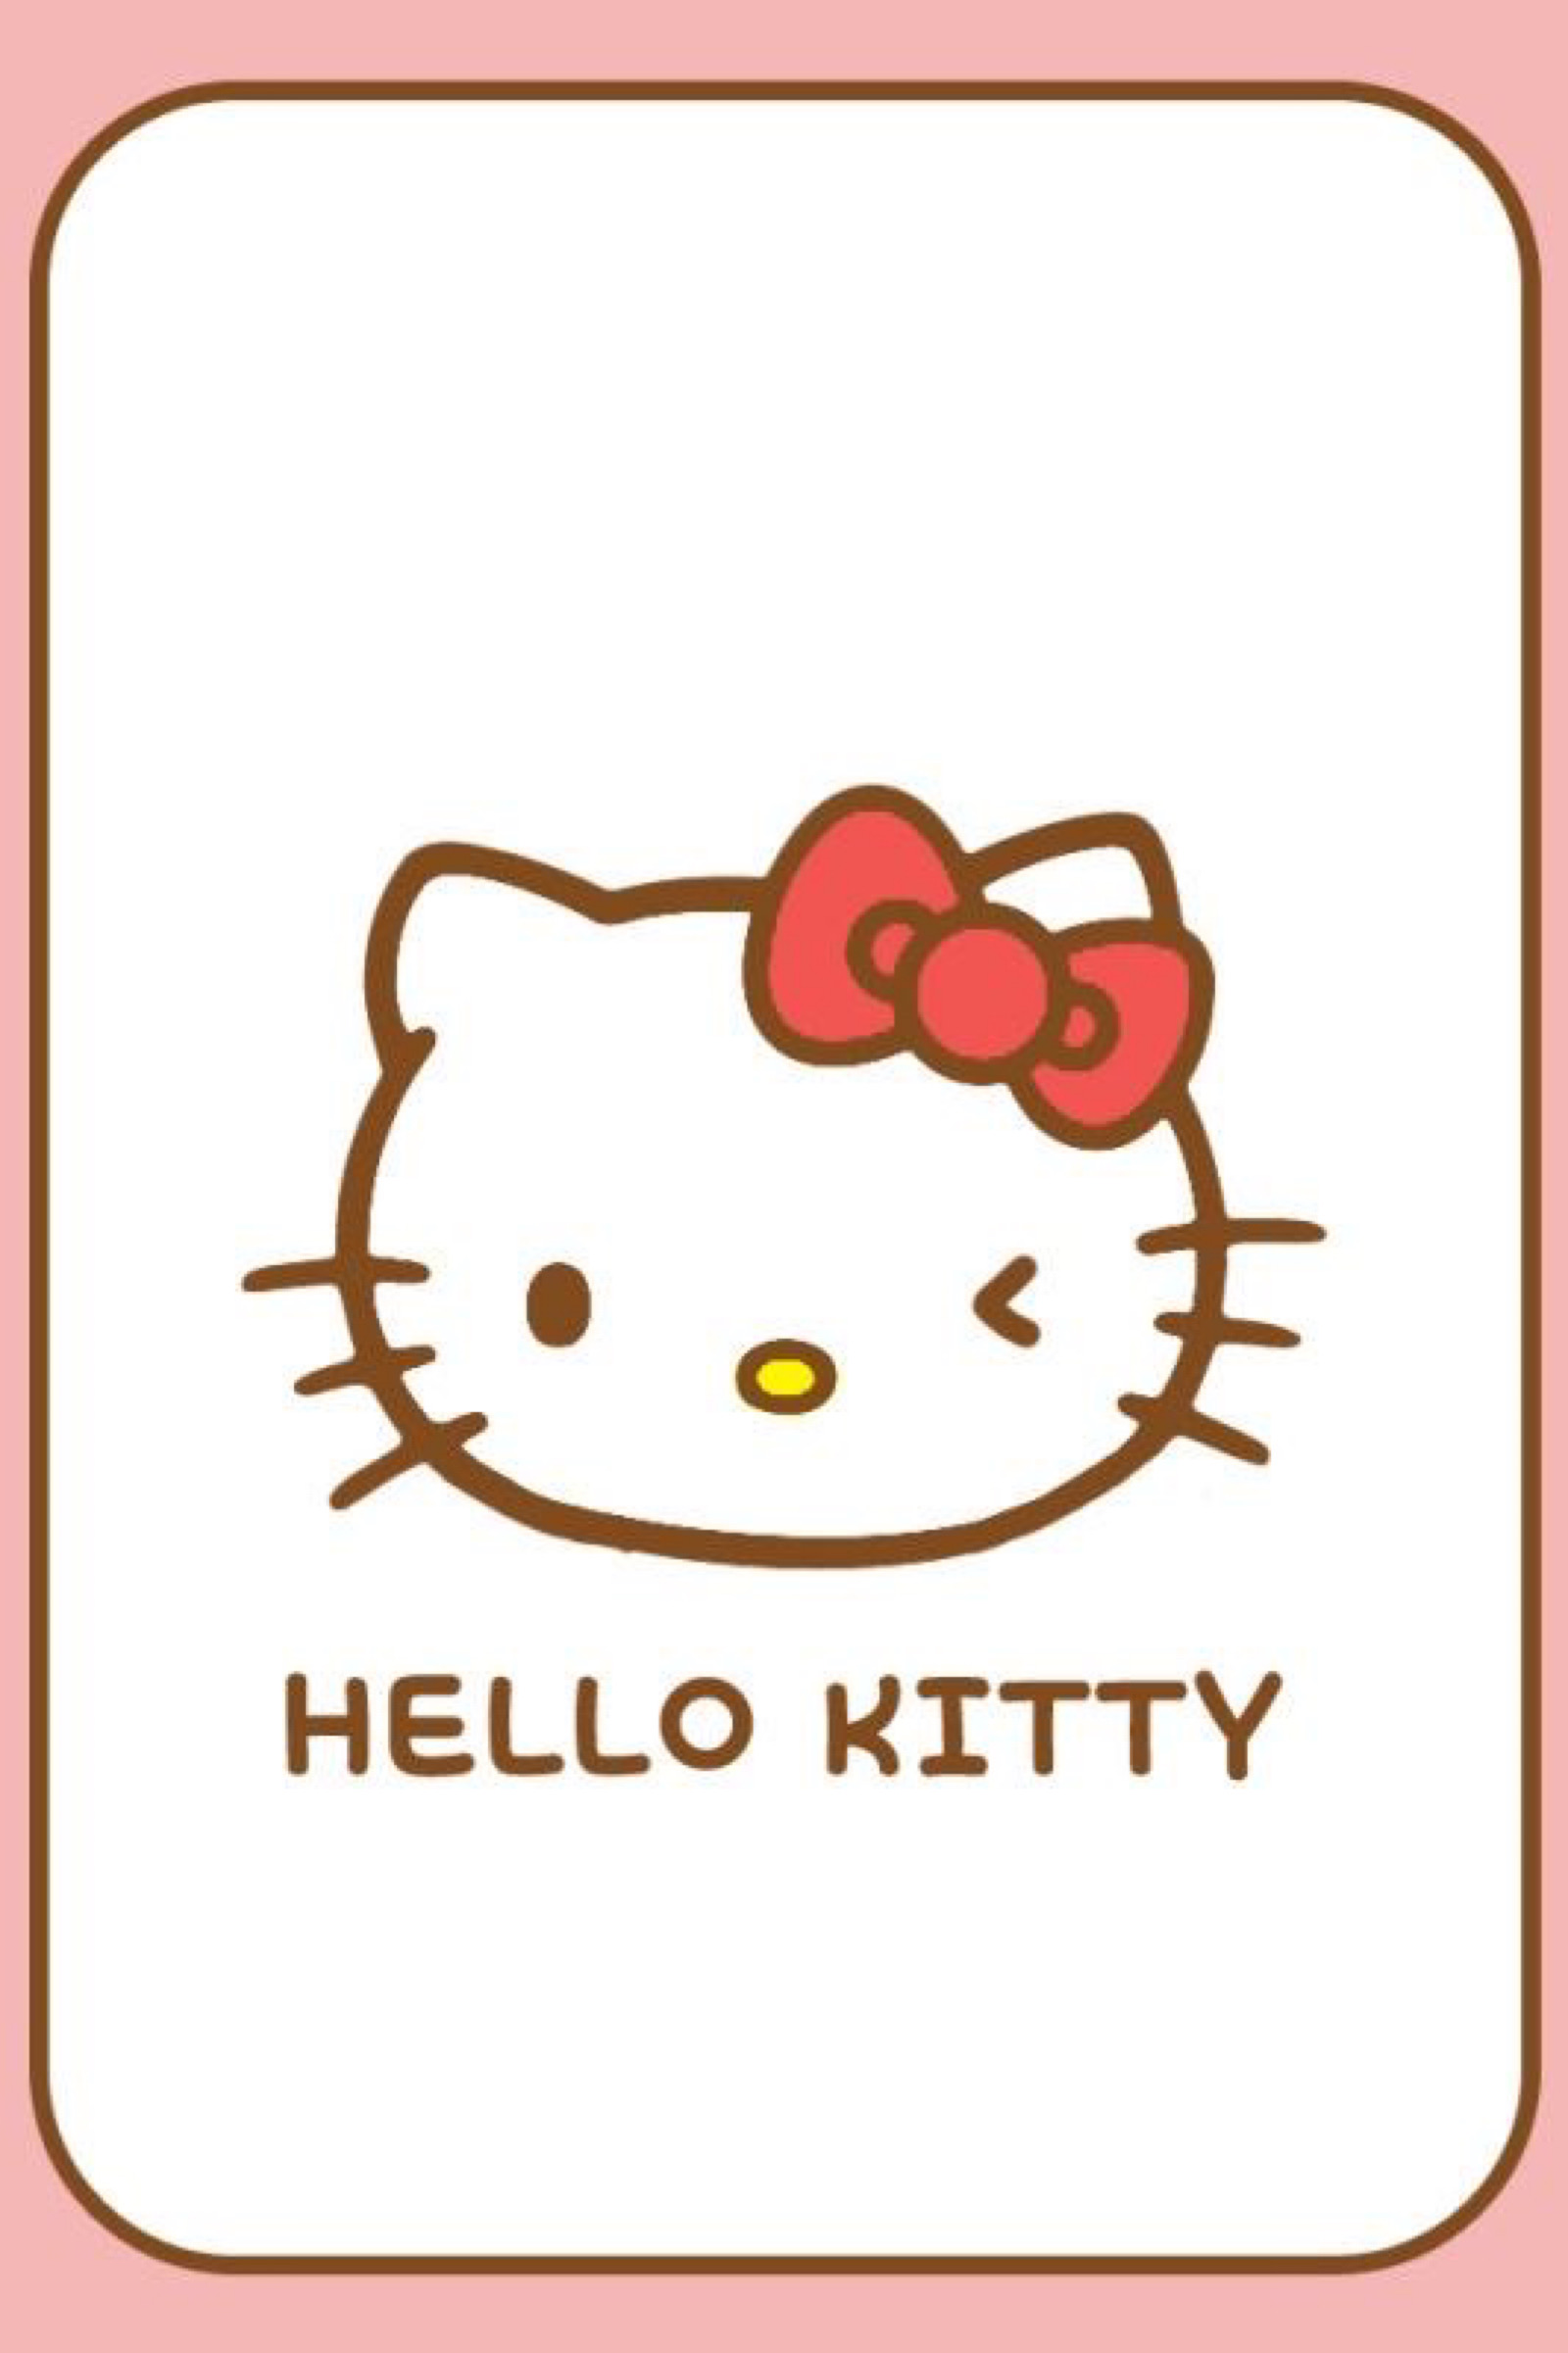 哈喽kitty头像简笔画 hello kitty可爱萌头像 - 第 3 | 犀牛图片网